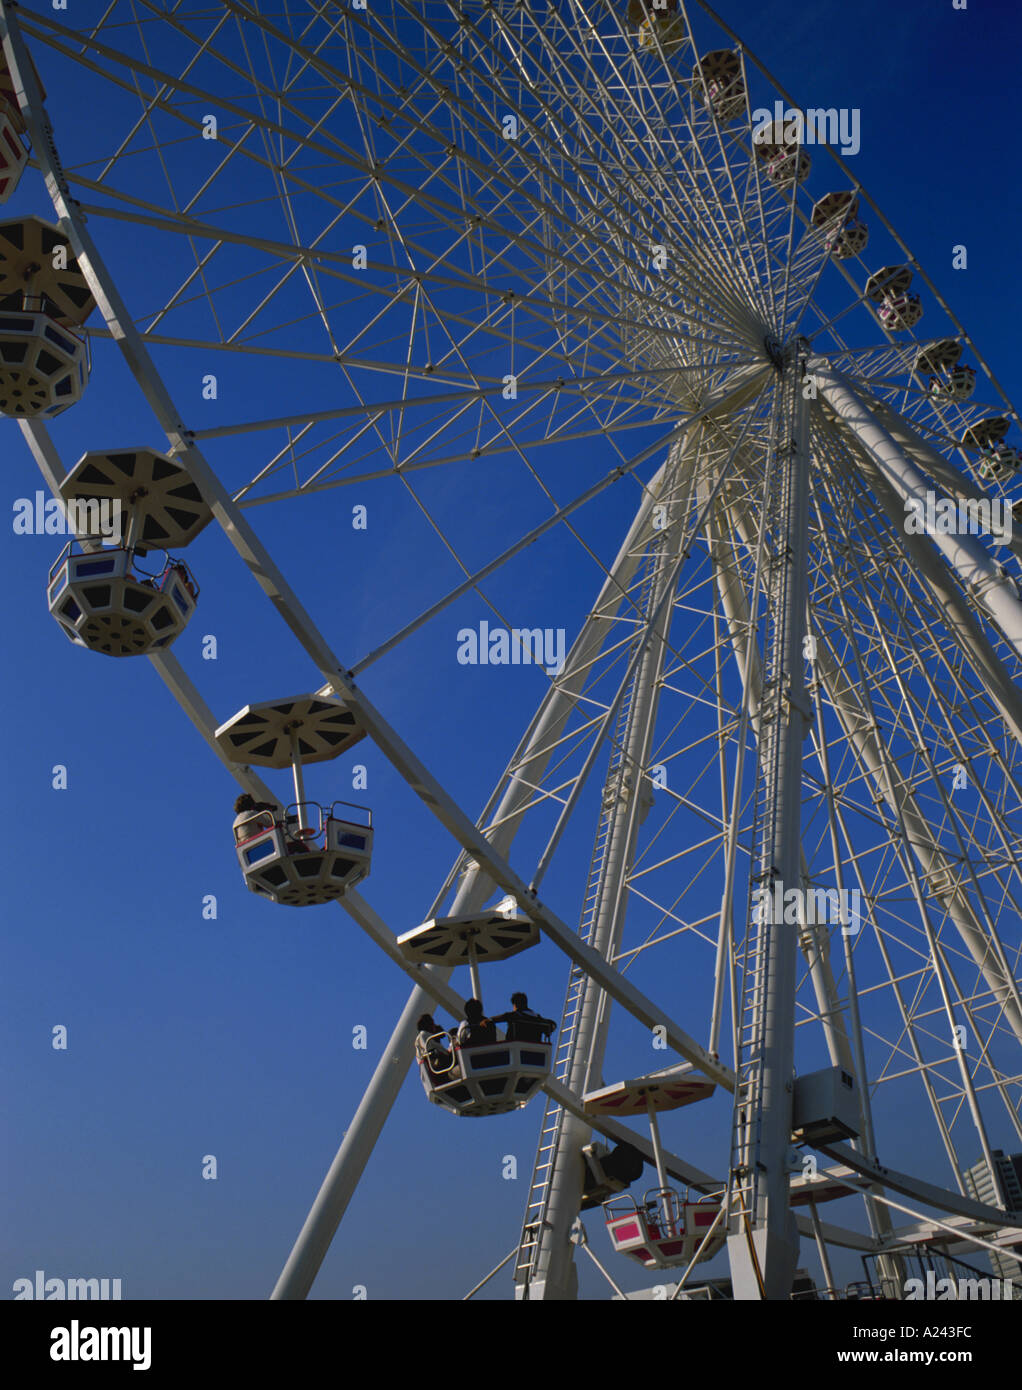 Giant Ferris wheel Stock Photo